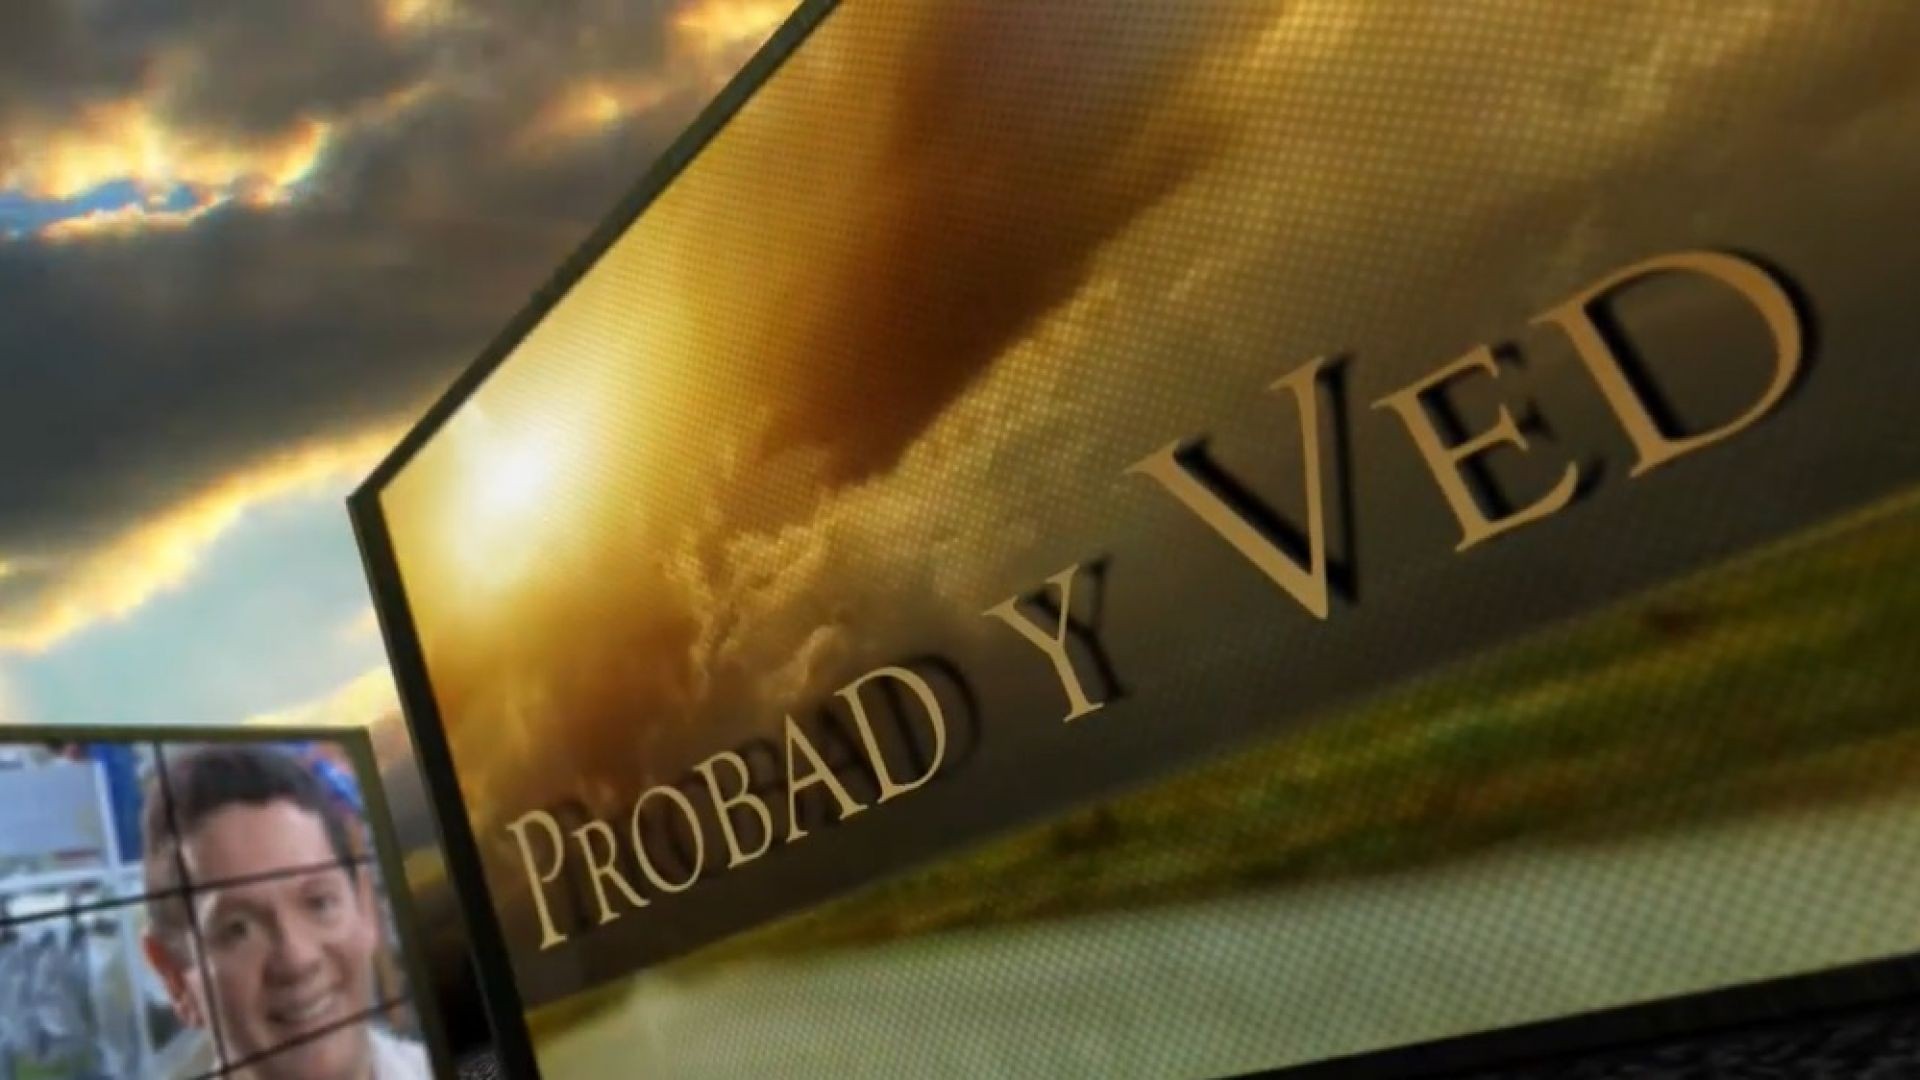 Probad y Ved 2013 - El sueño de Dios es más grande - 10/Ago